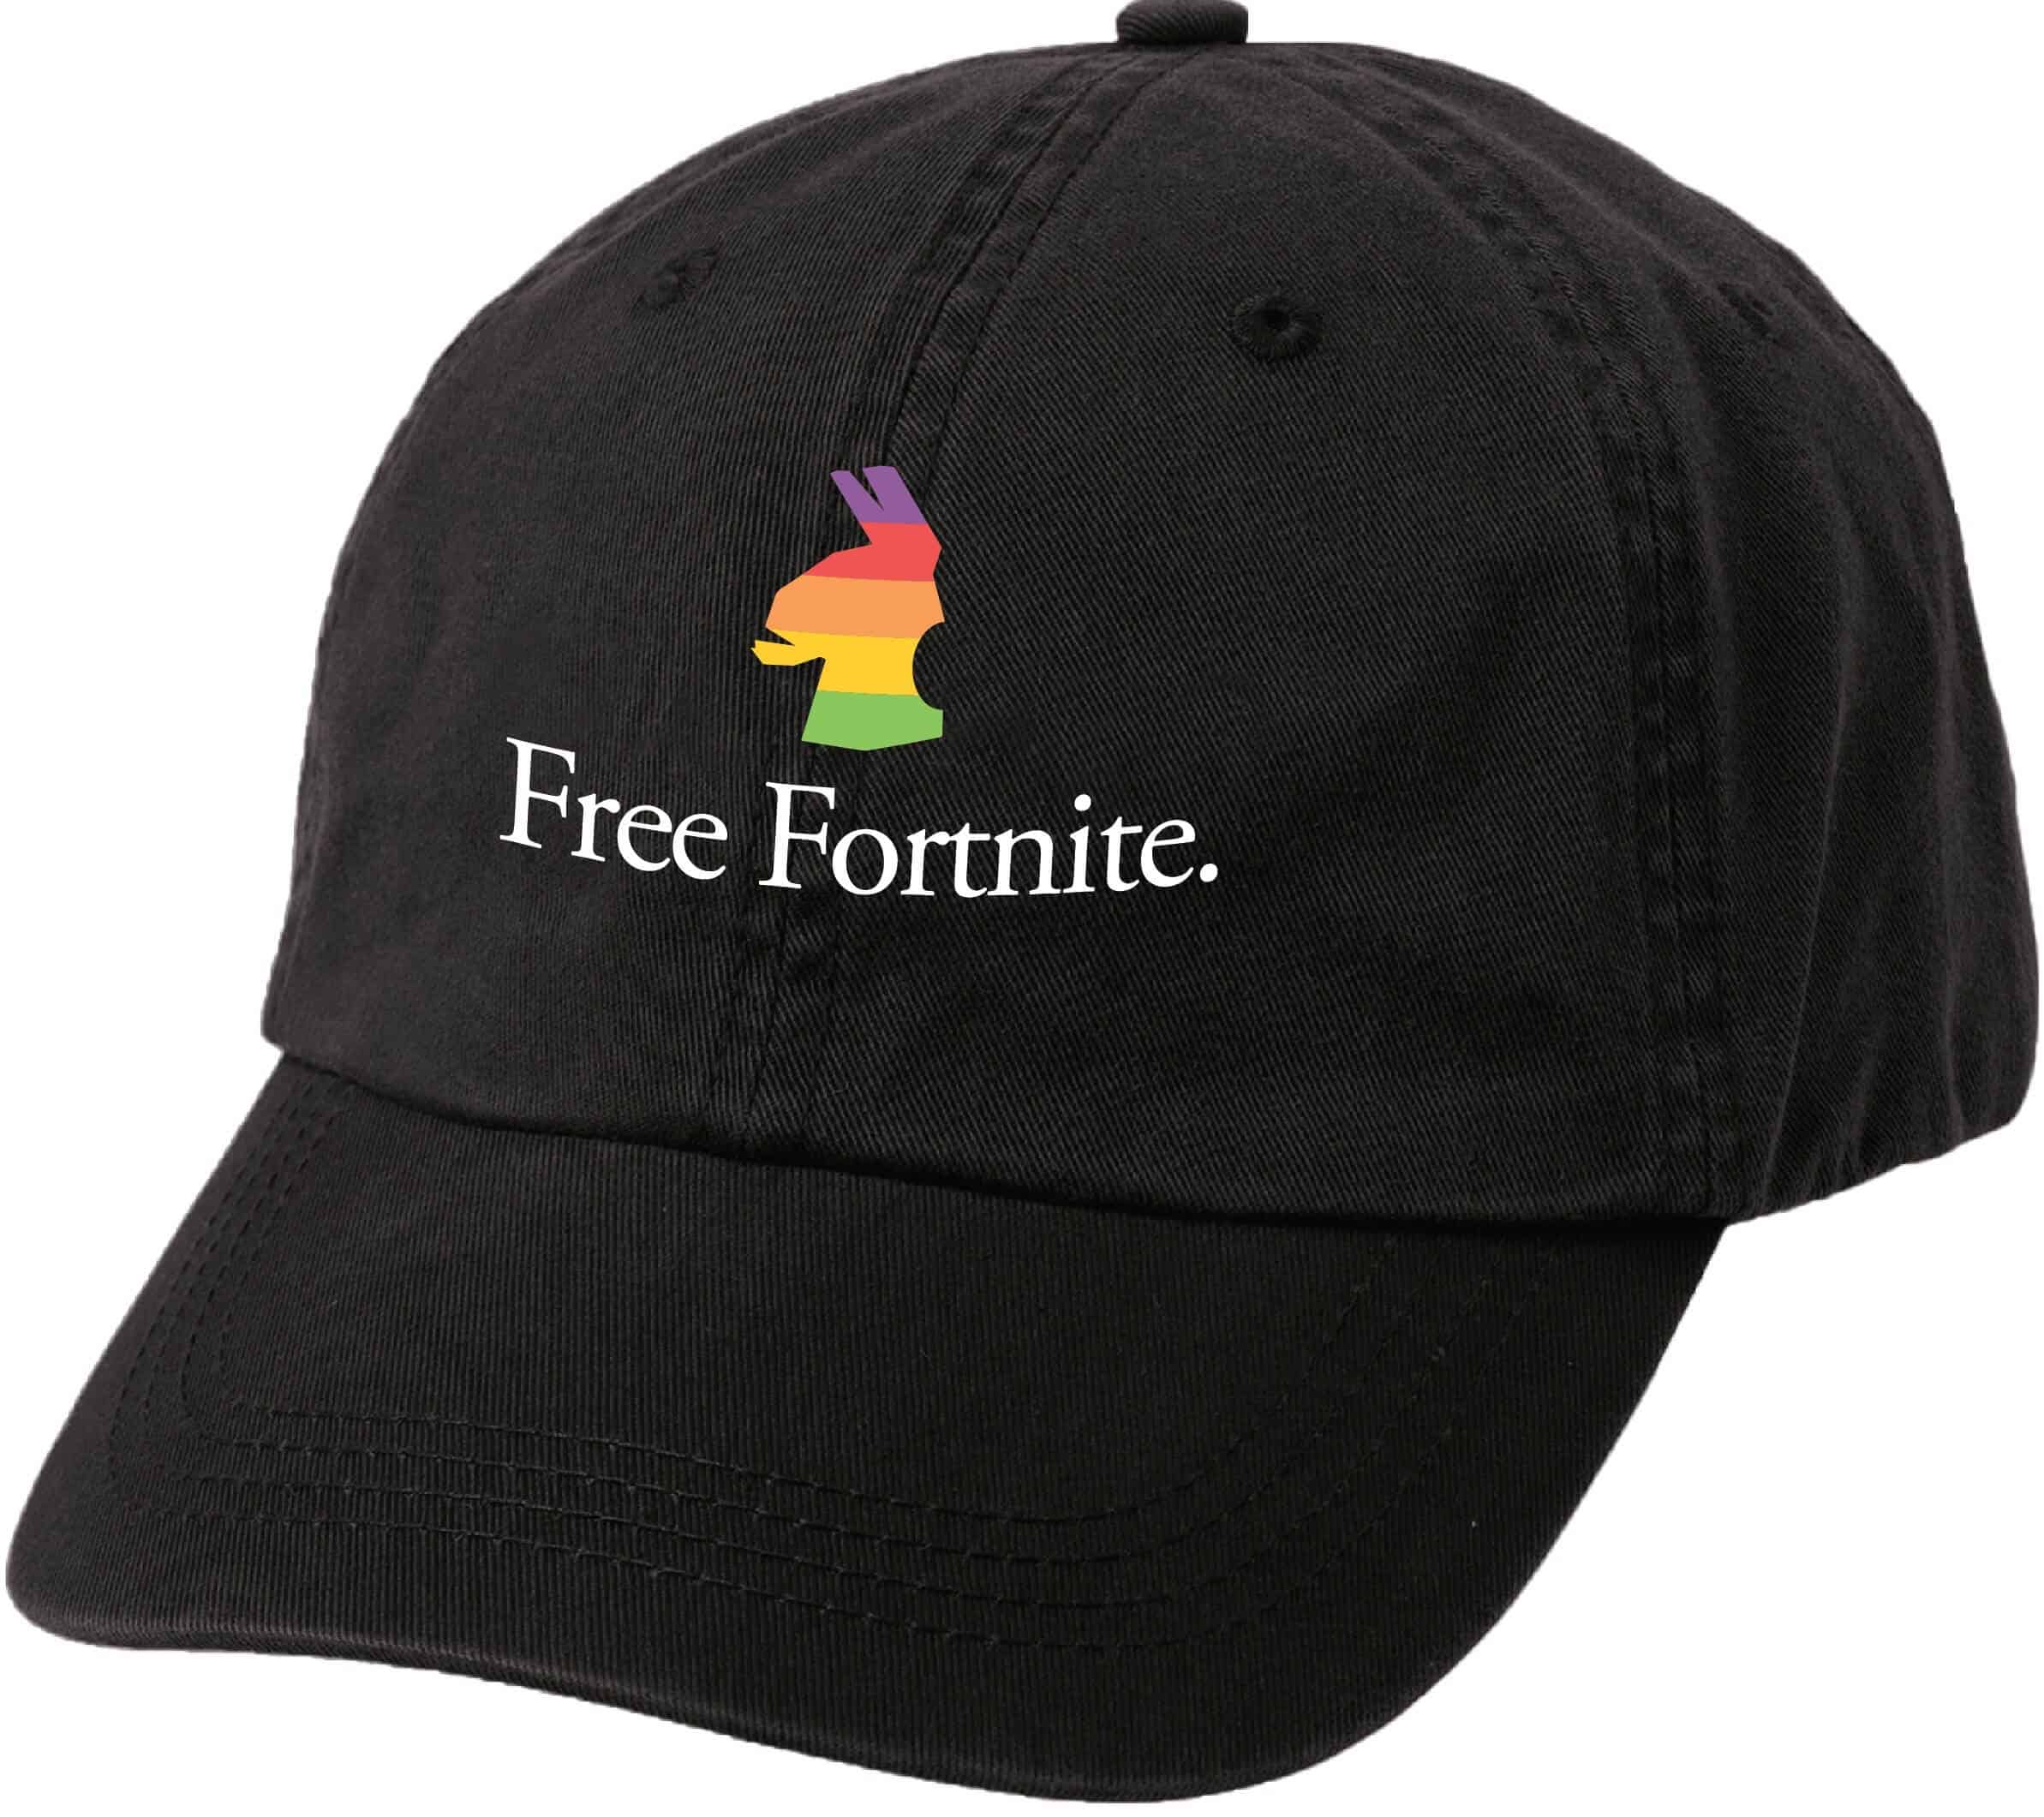 무료 포트나이트 모자